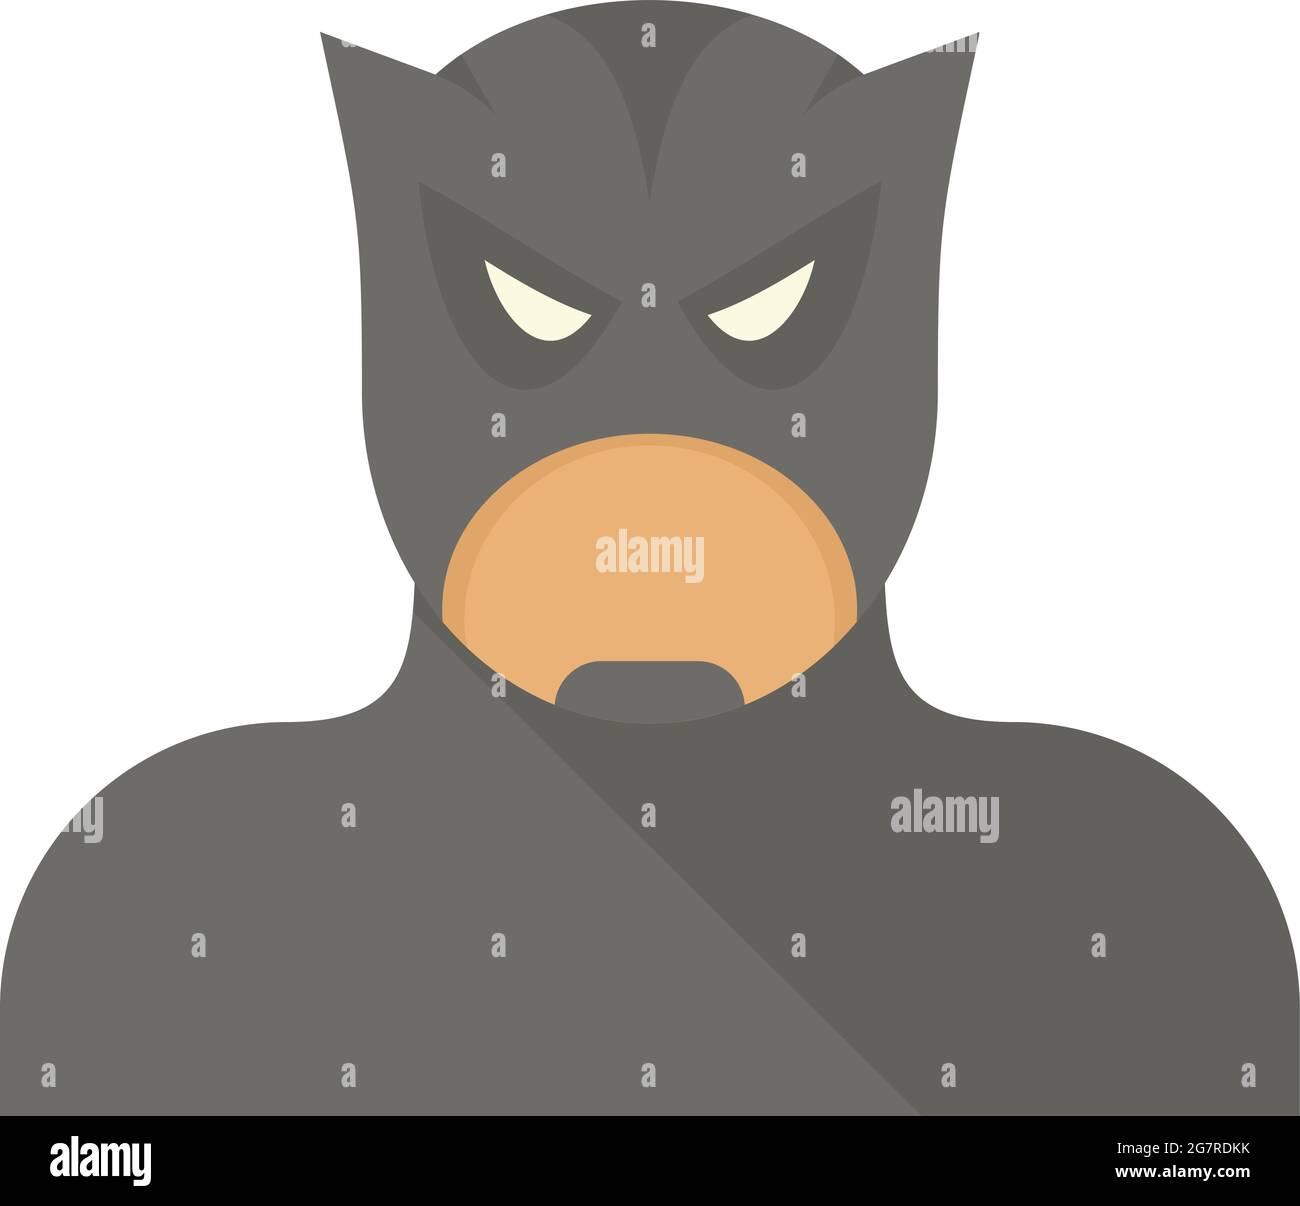 Bat superhero icon. Flat illustration of bat superhero vector icon isolated on white background Stock Vector